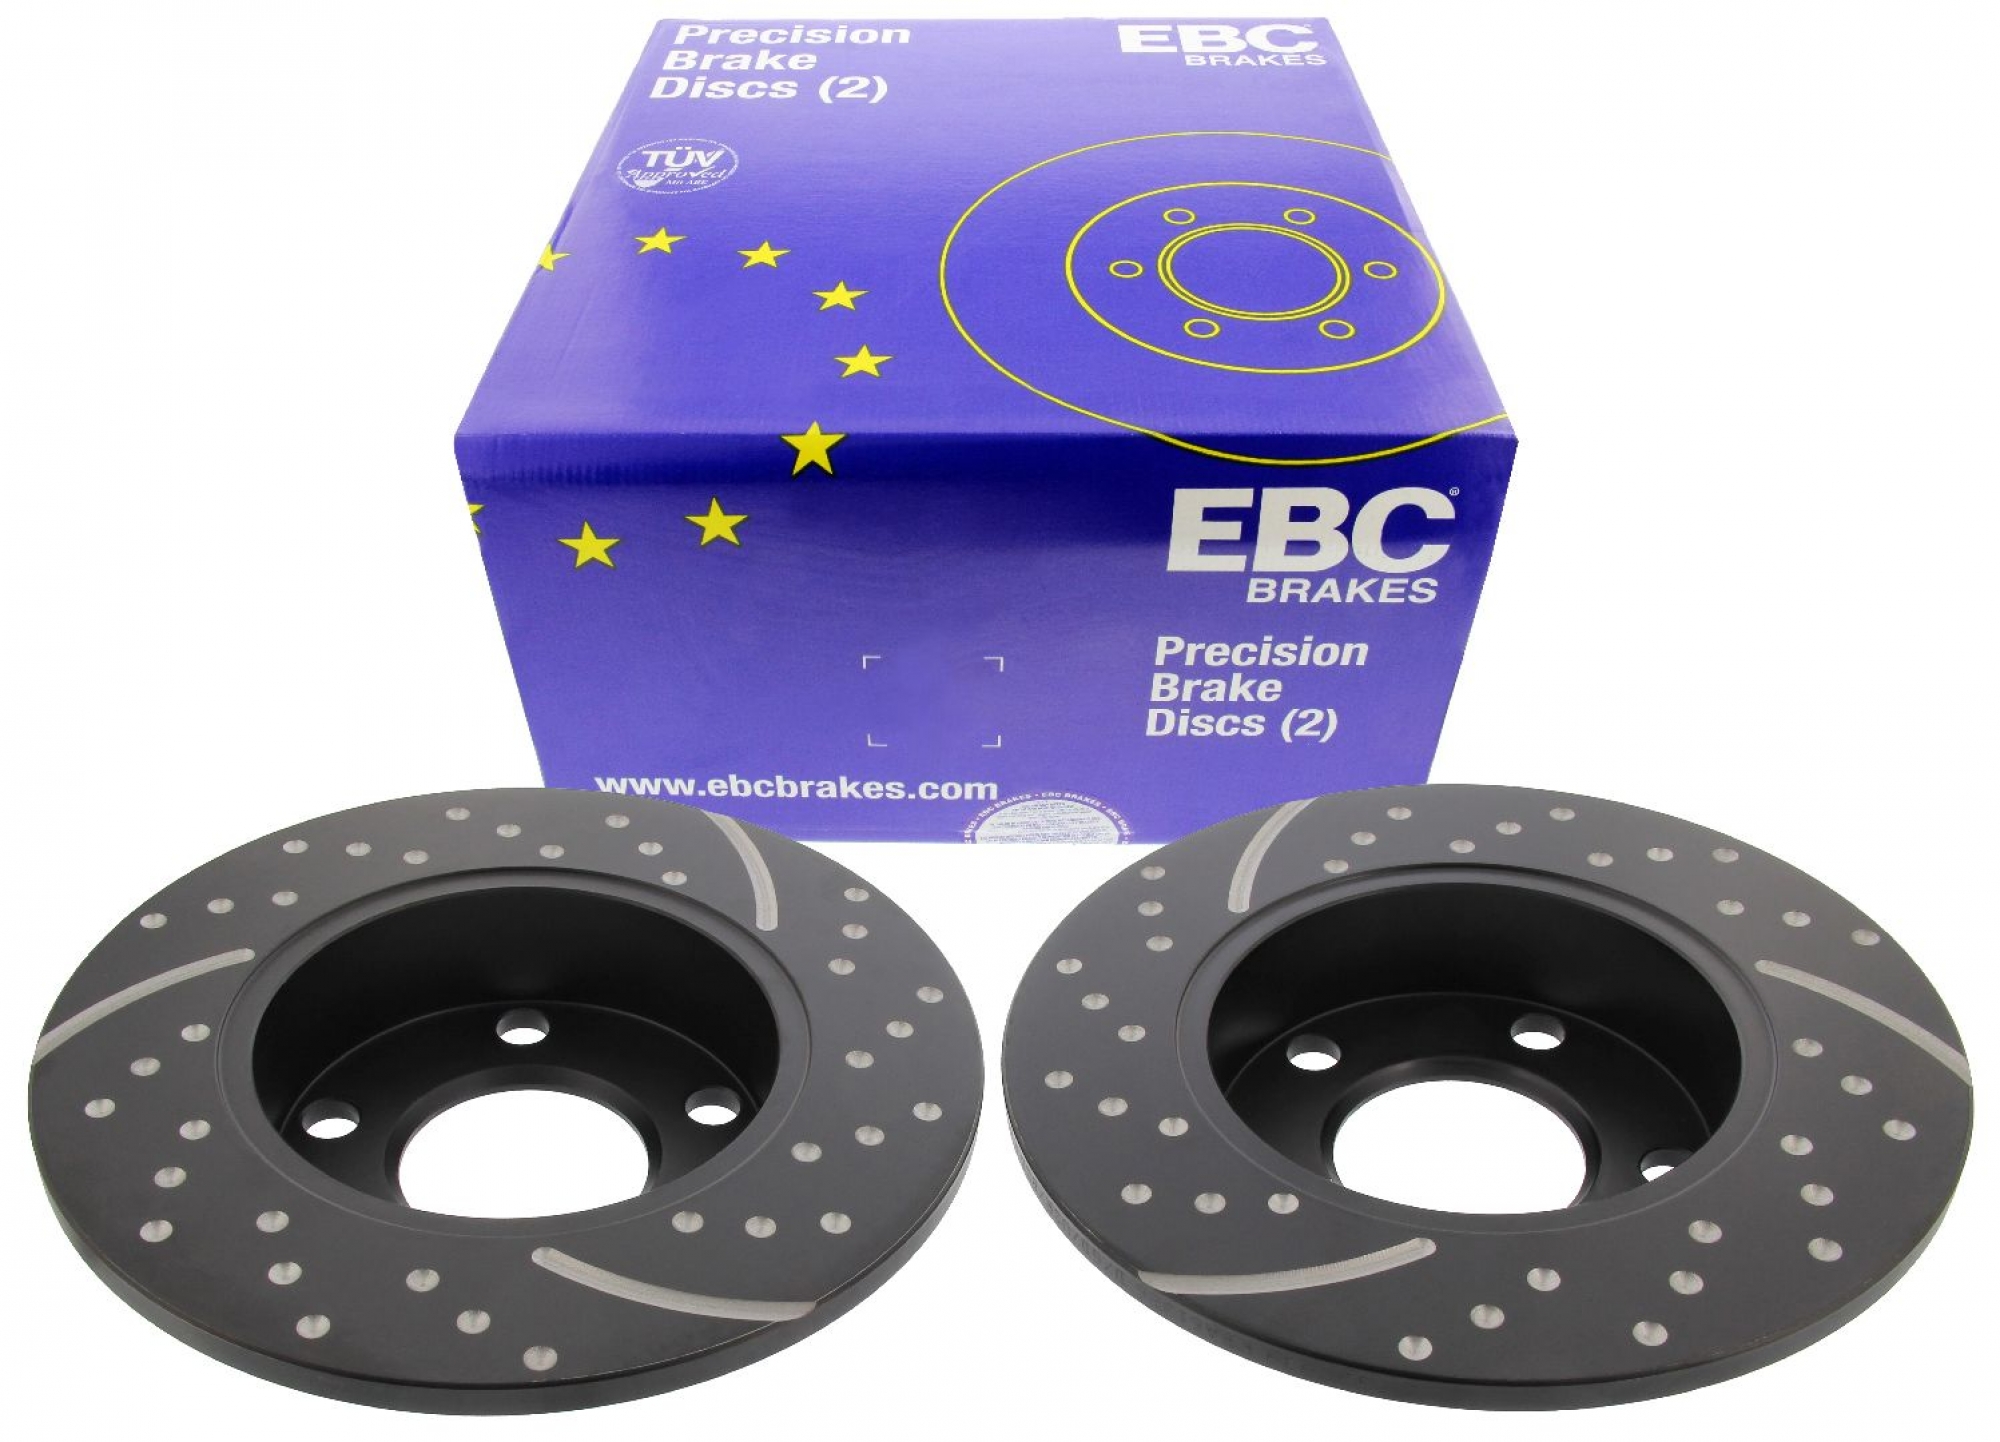 EBC-Bremsscheiben, Turbo Groove Disc Black (2-teilig), HA, Audi A4, VW Passat